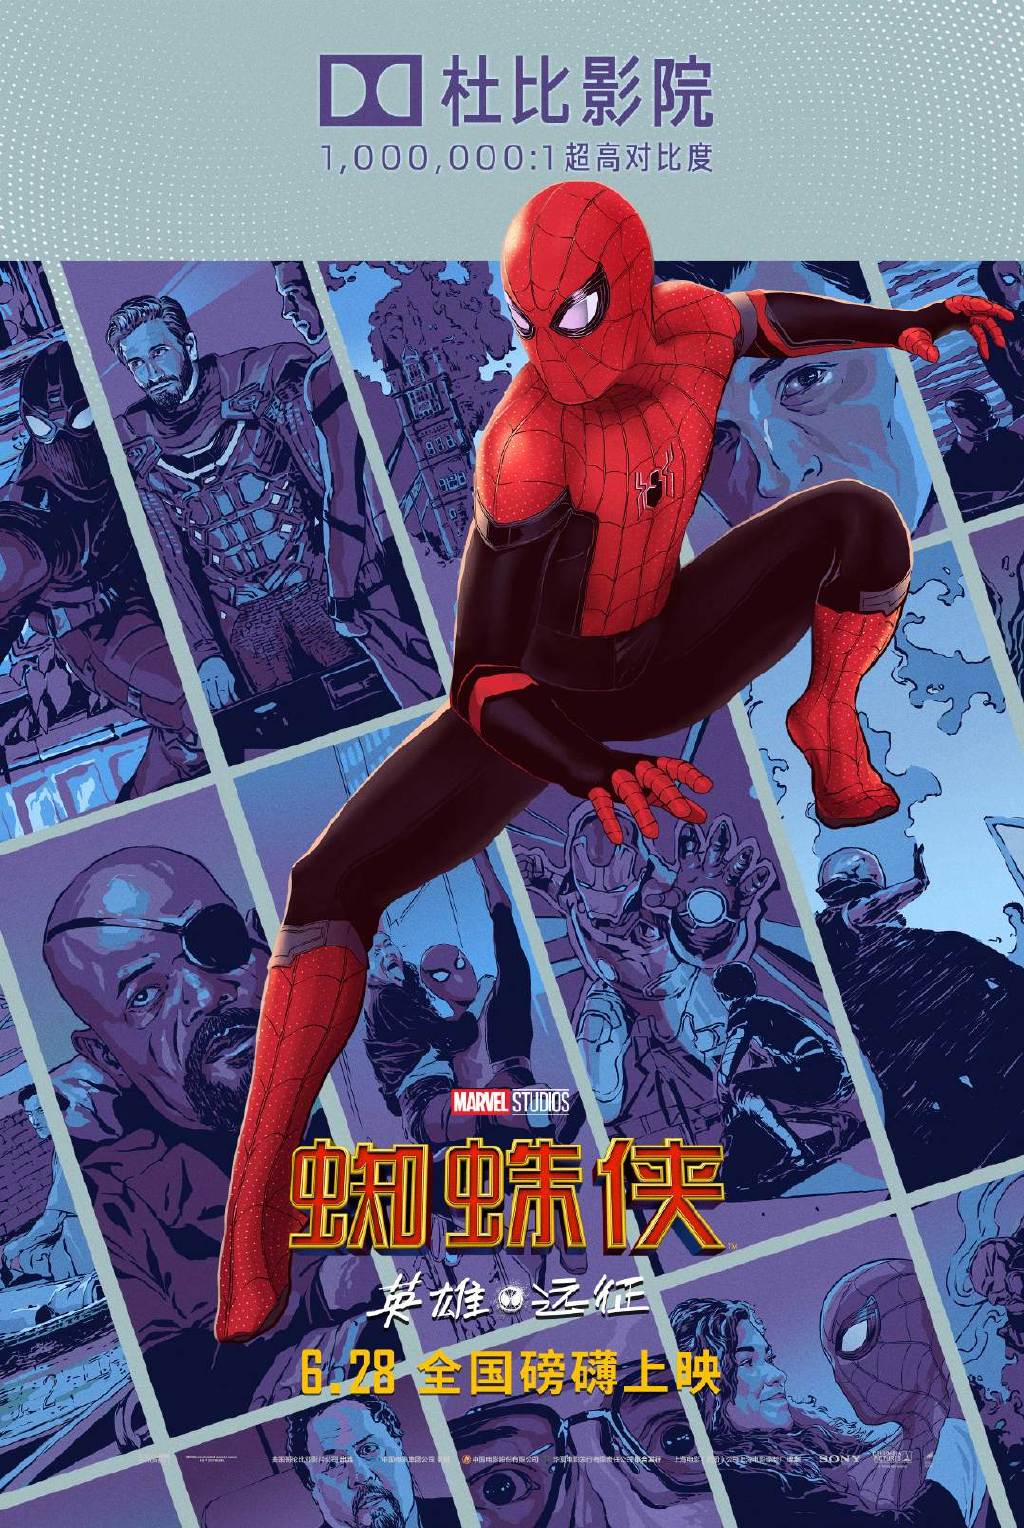 上映在即 《蜘蛛侠：英雄远征》发布酷炫制式海报